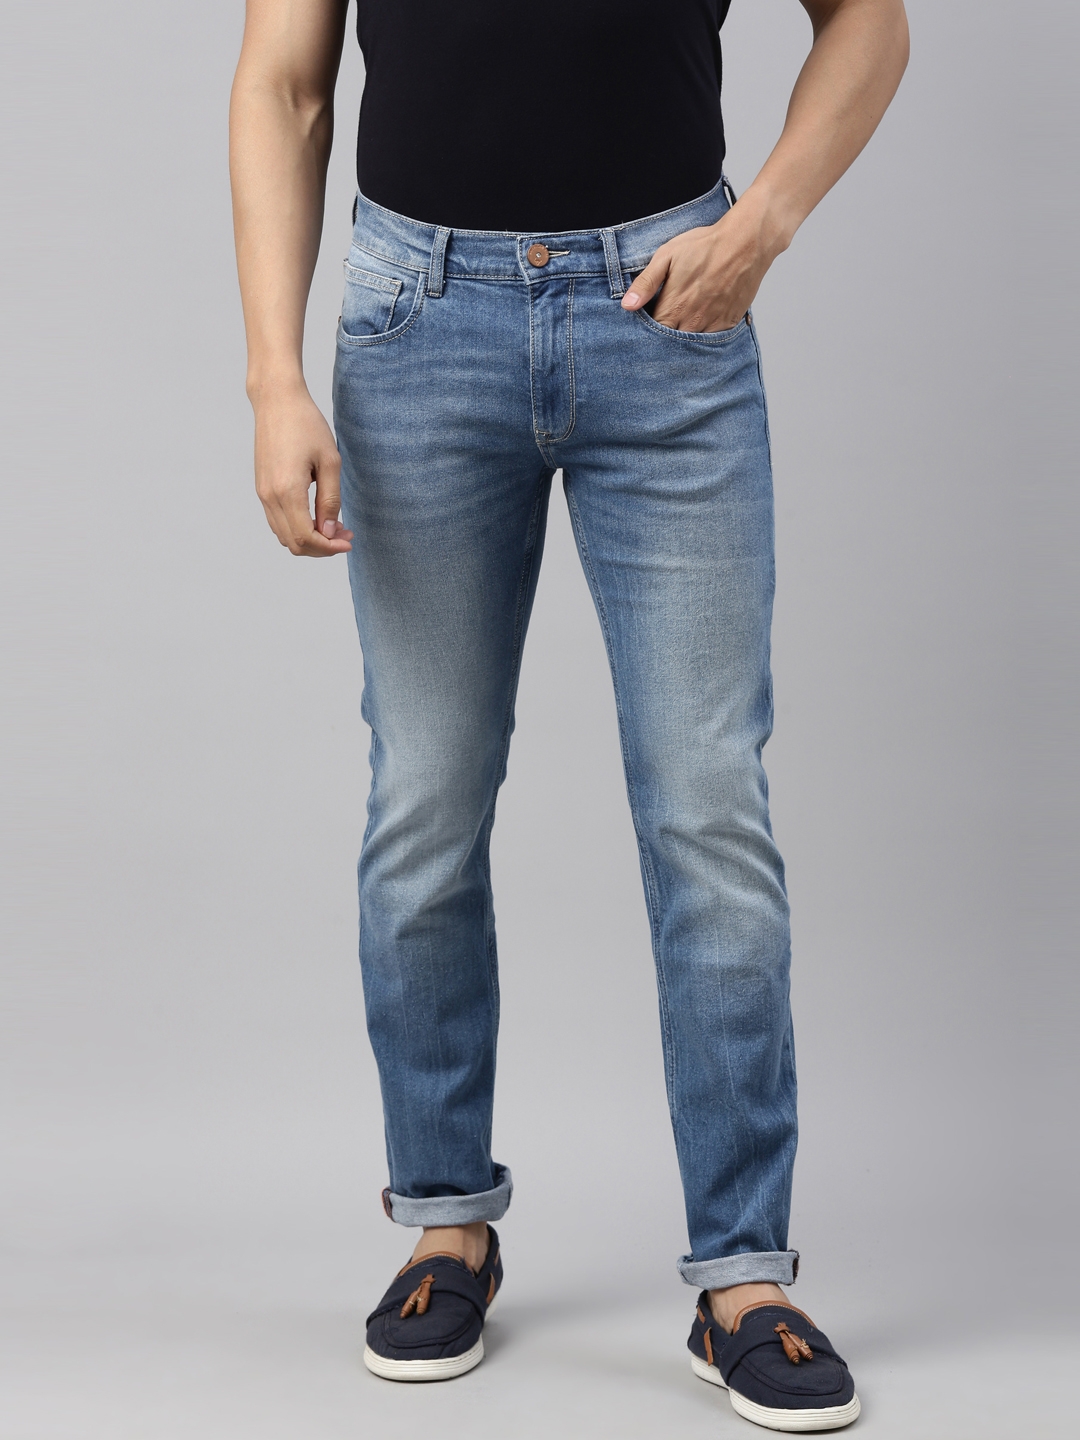 American Bull | American Bull Mens Solid Full length Denim Jeans